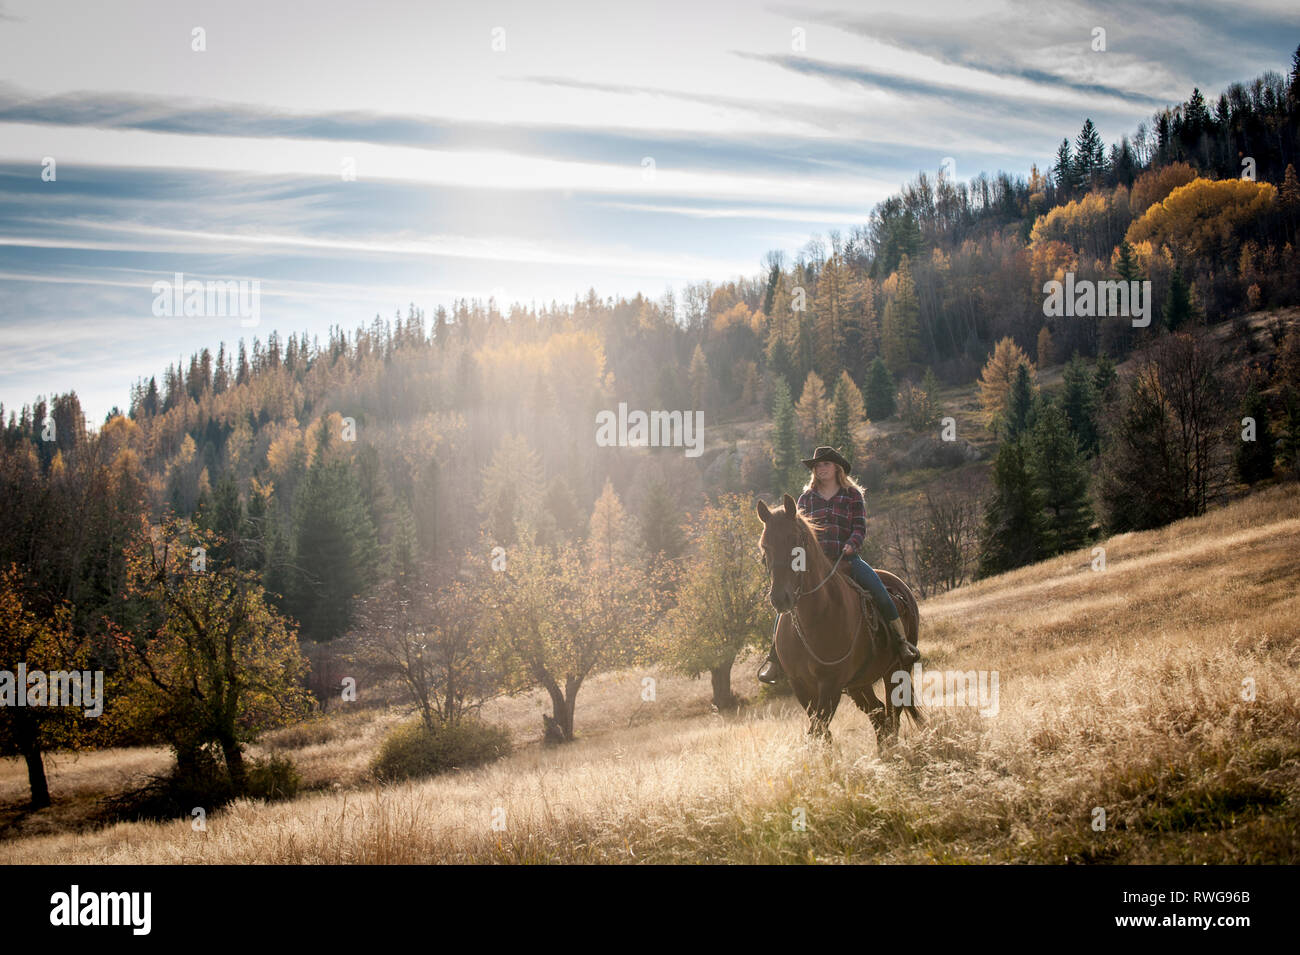 Blond female riding horseback, western, autumn, Rossland BC, Canada Stock Photo